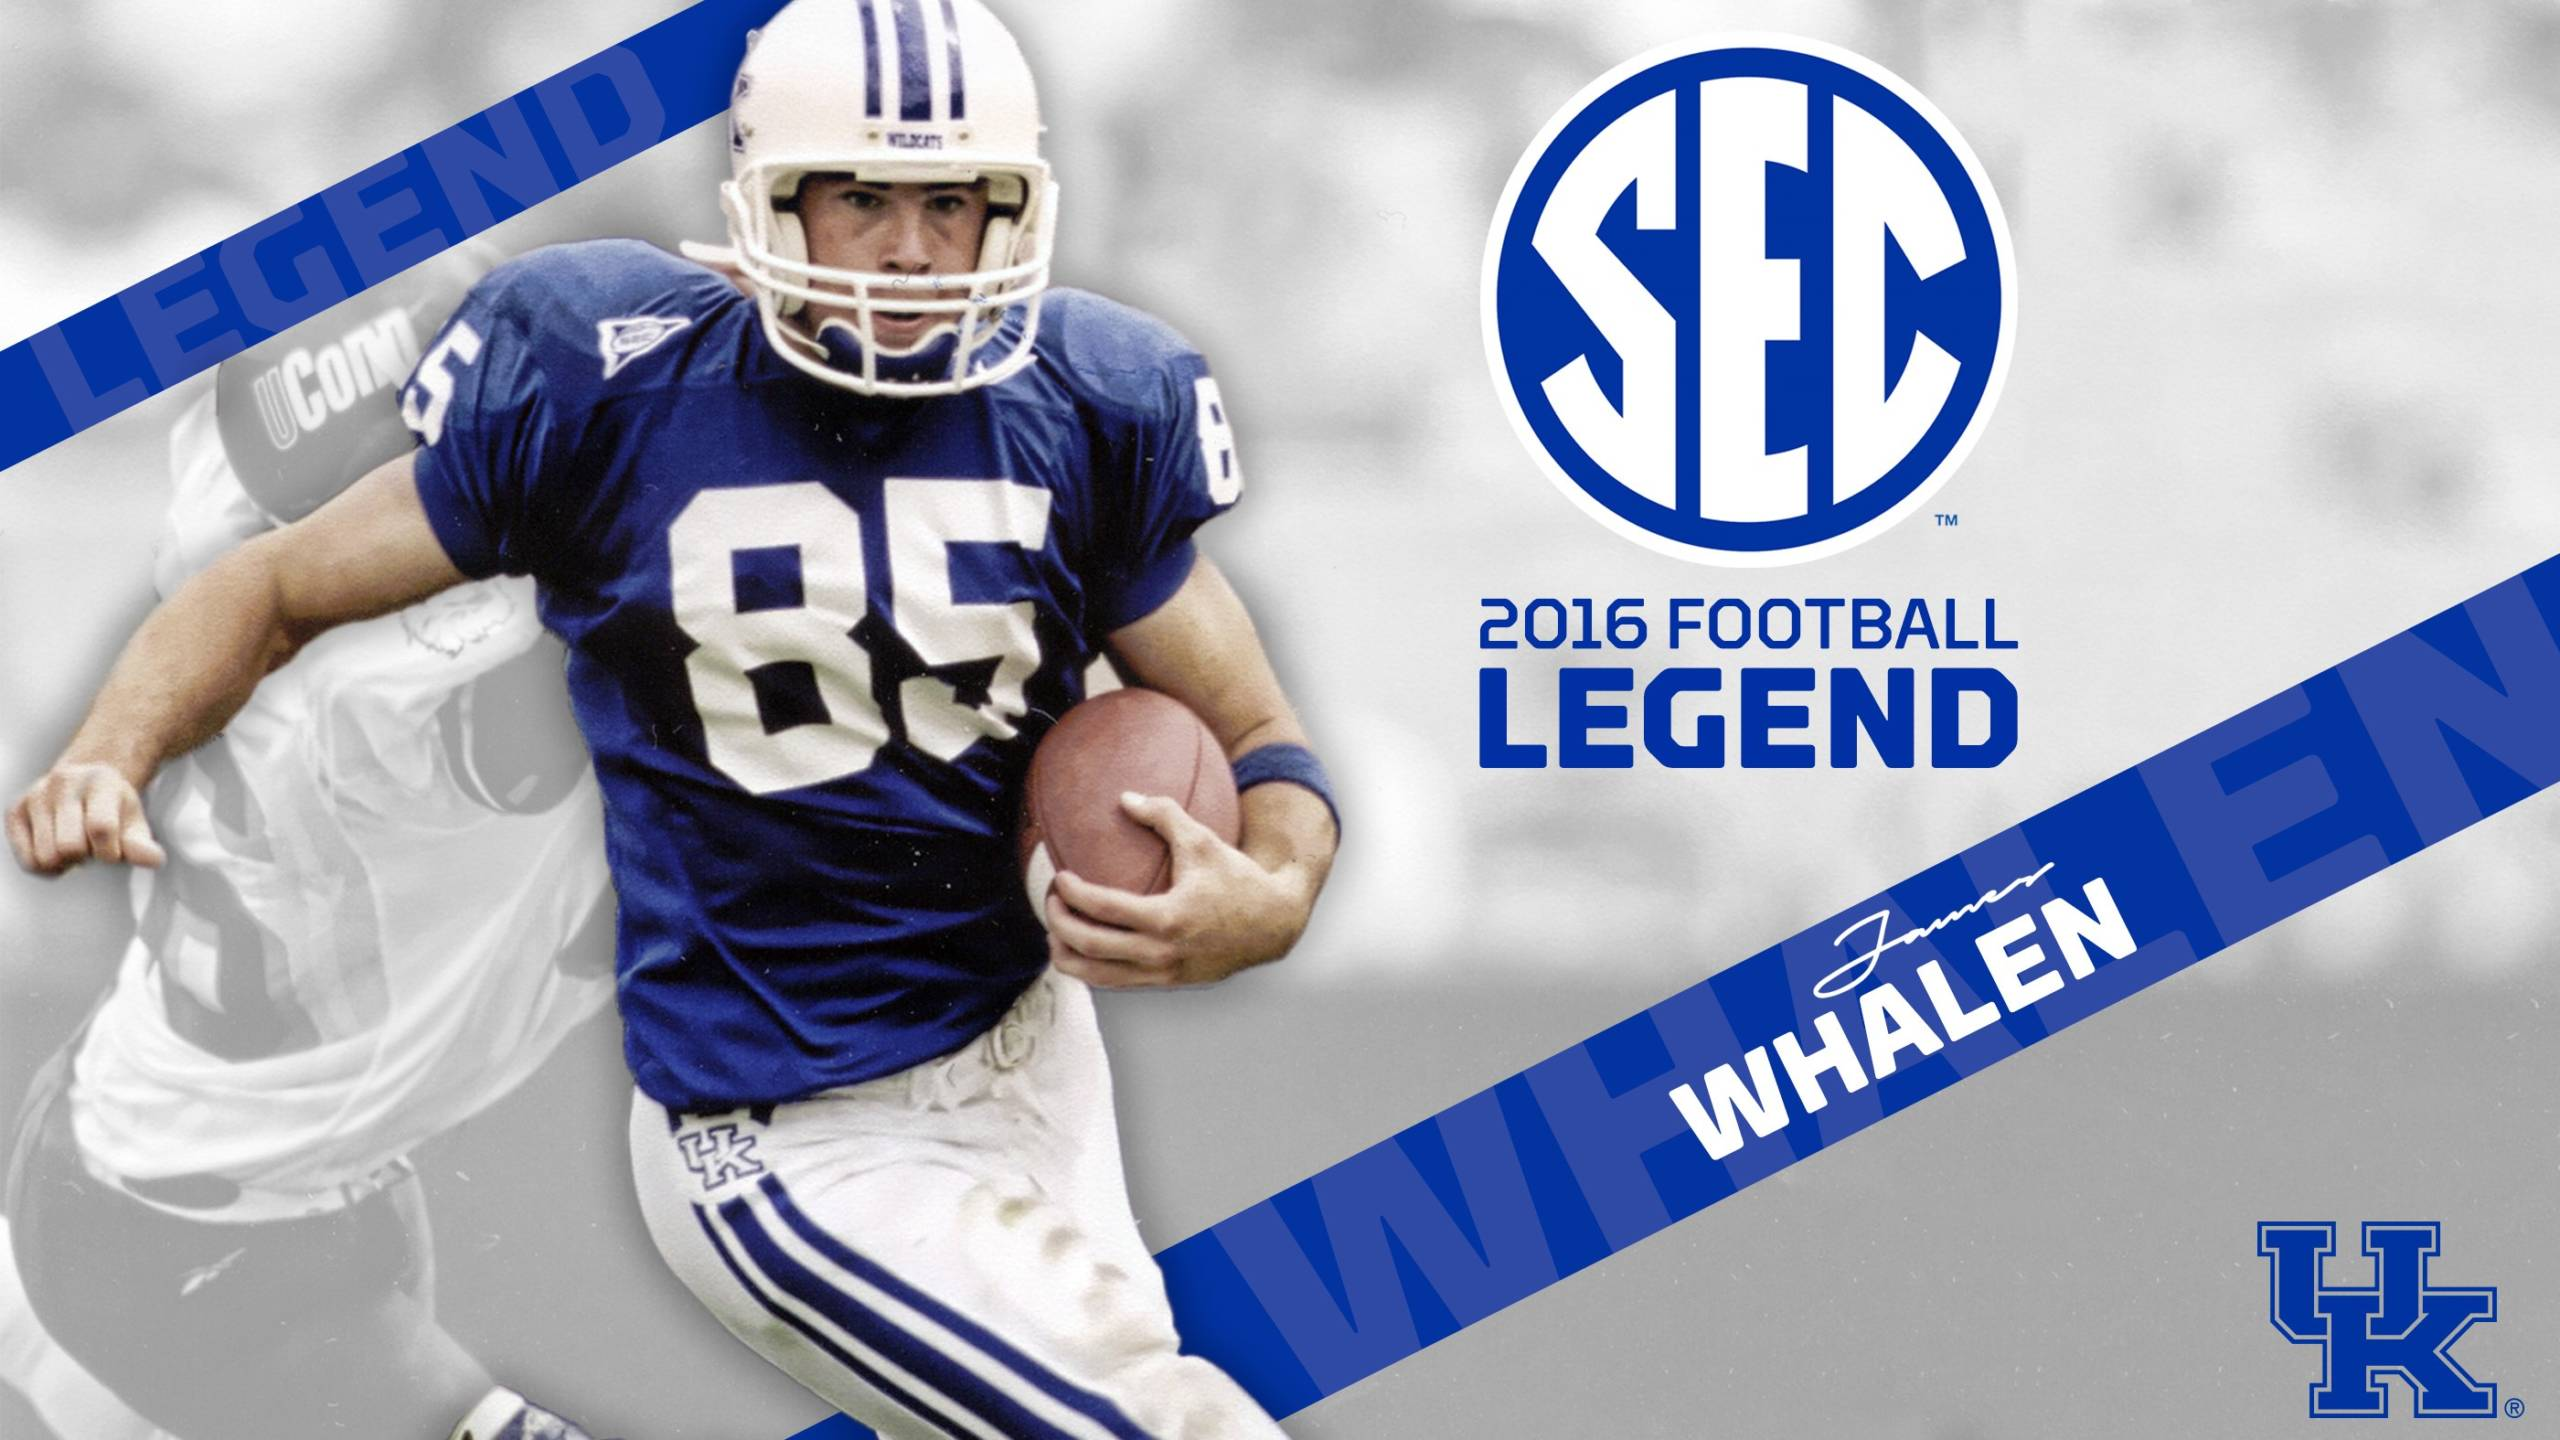 James Whalen Named Kentucky’s SEC Football Legend